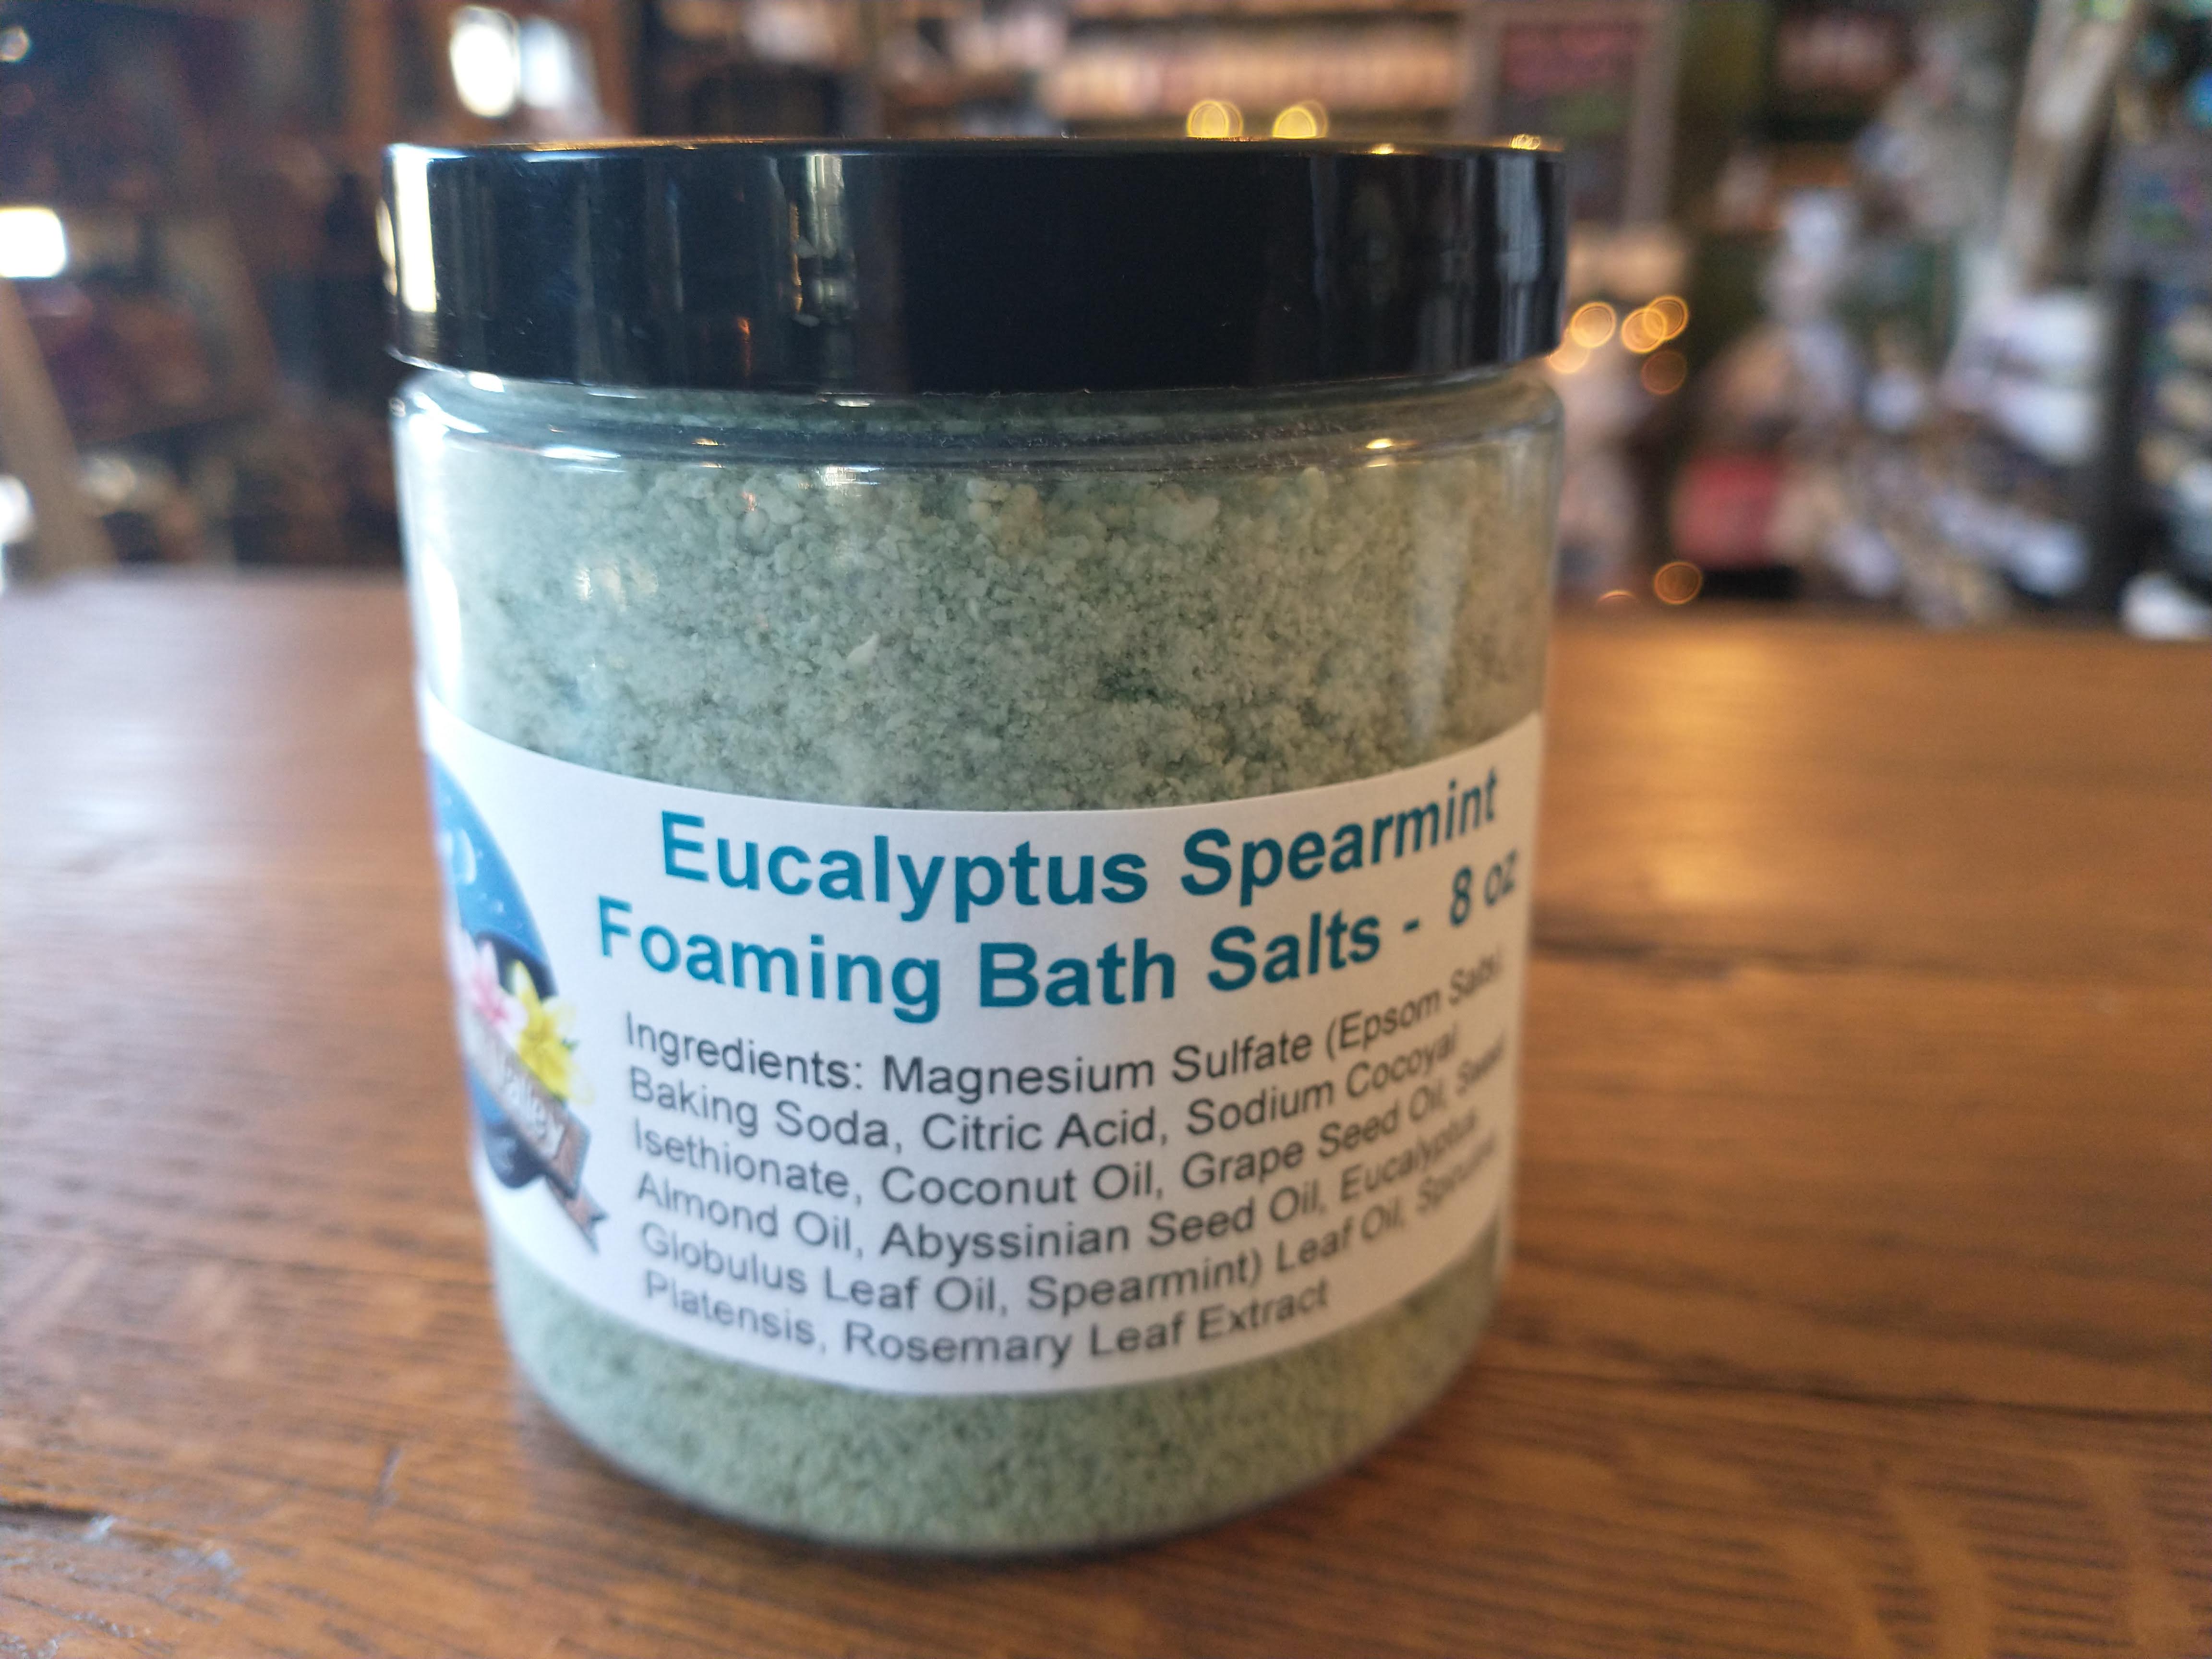 Eucalyptus Spearmint Foaming Bath Salts